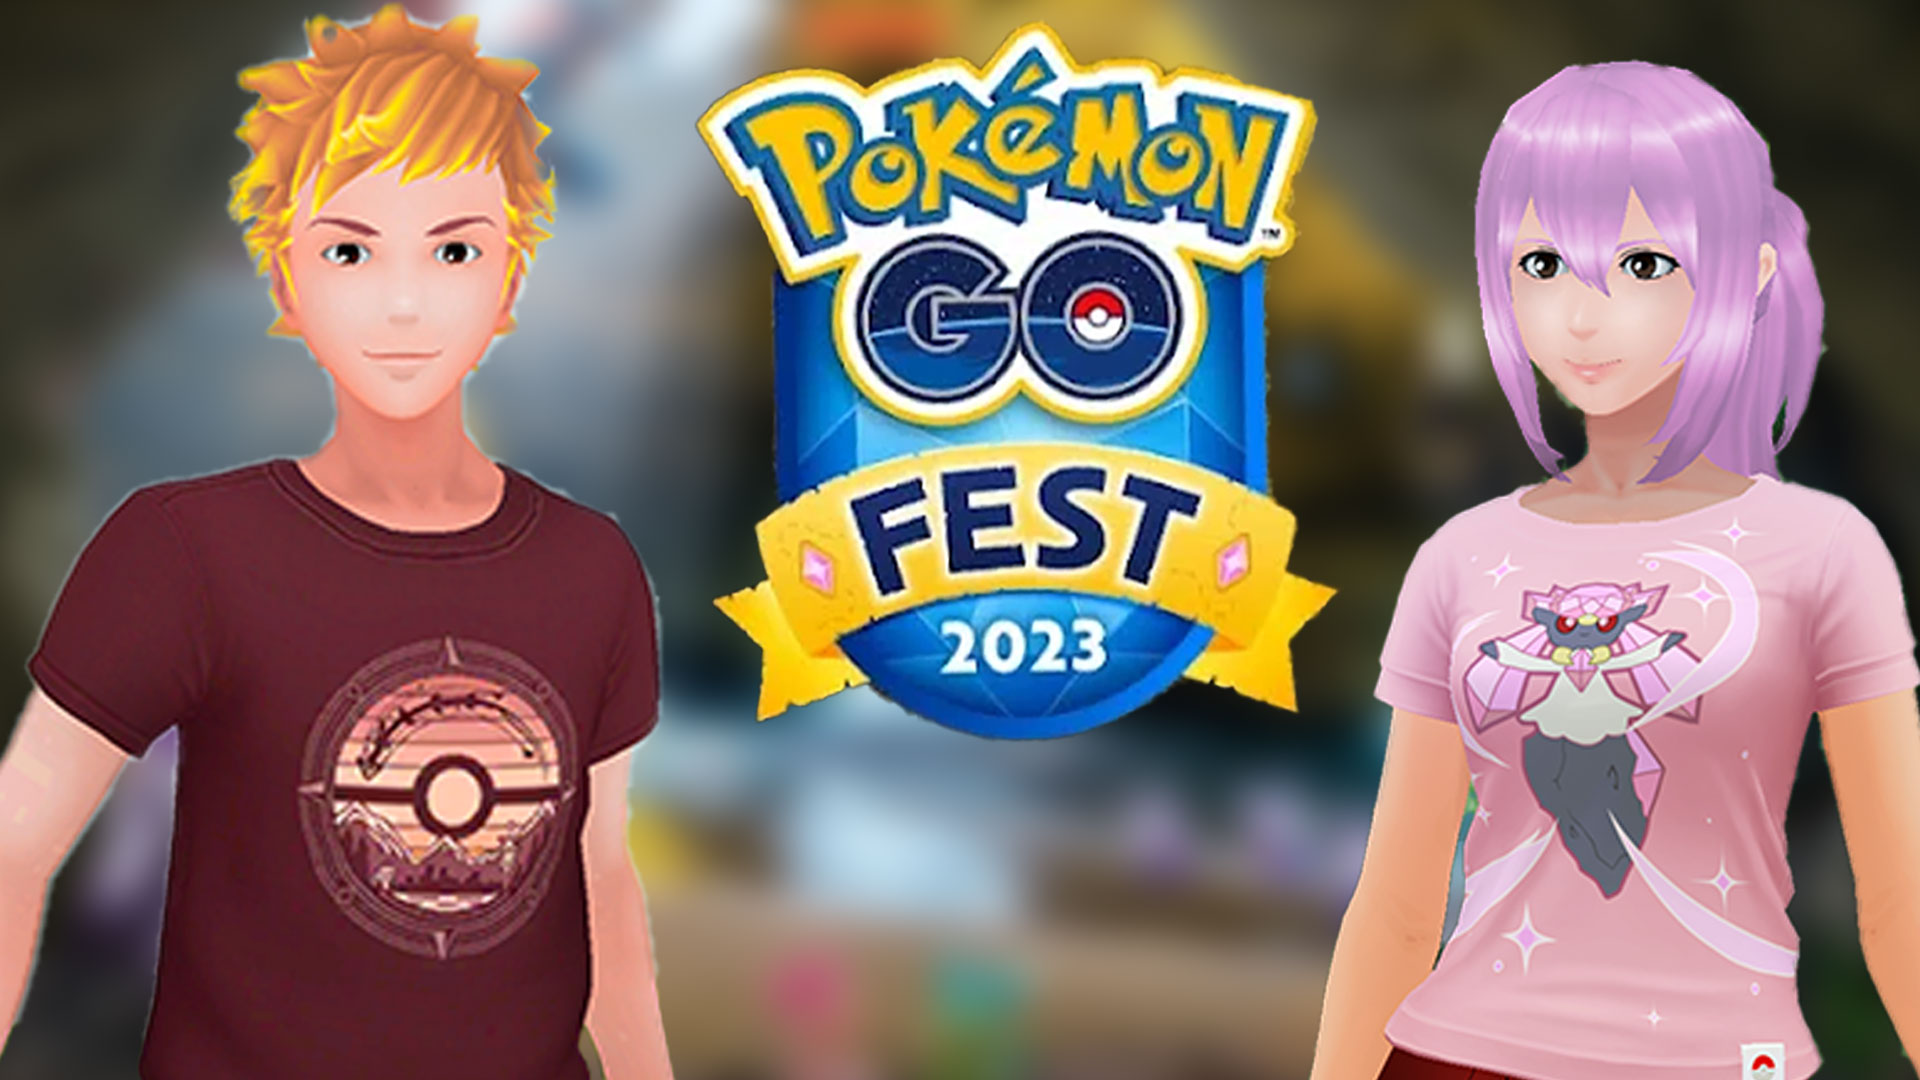 Pokémon GO: transmisja na żywo ze Światowego Festiwalu GO 2023